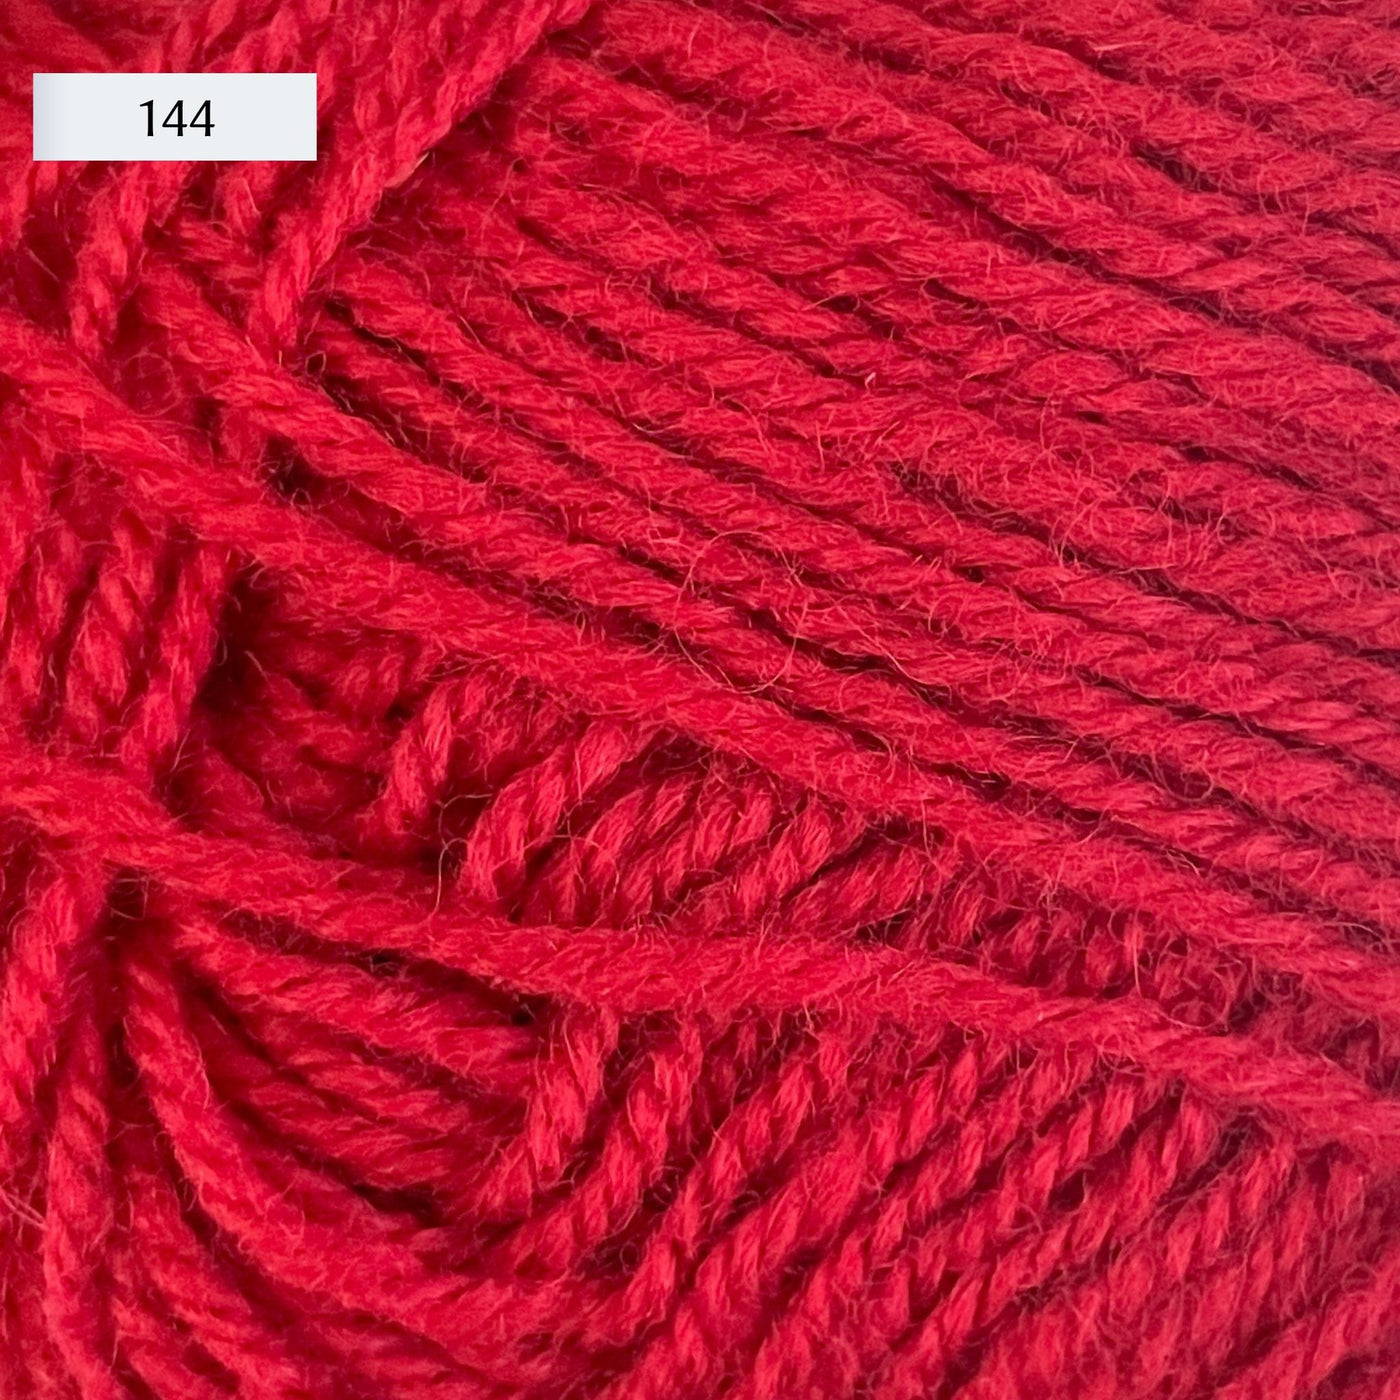 Rauma Strikkegarn, DK weight yarn, in color 144, bright crimson red